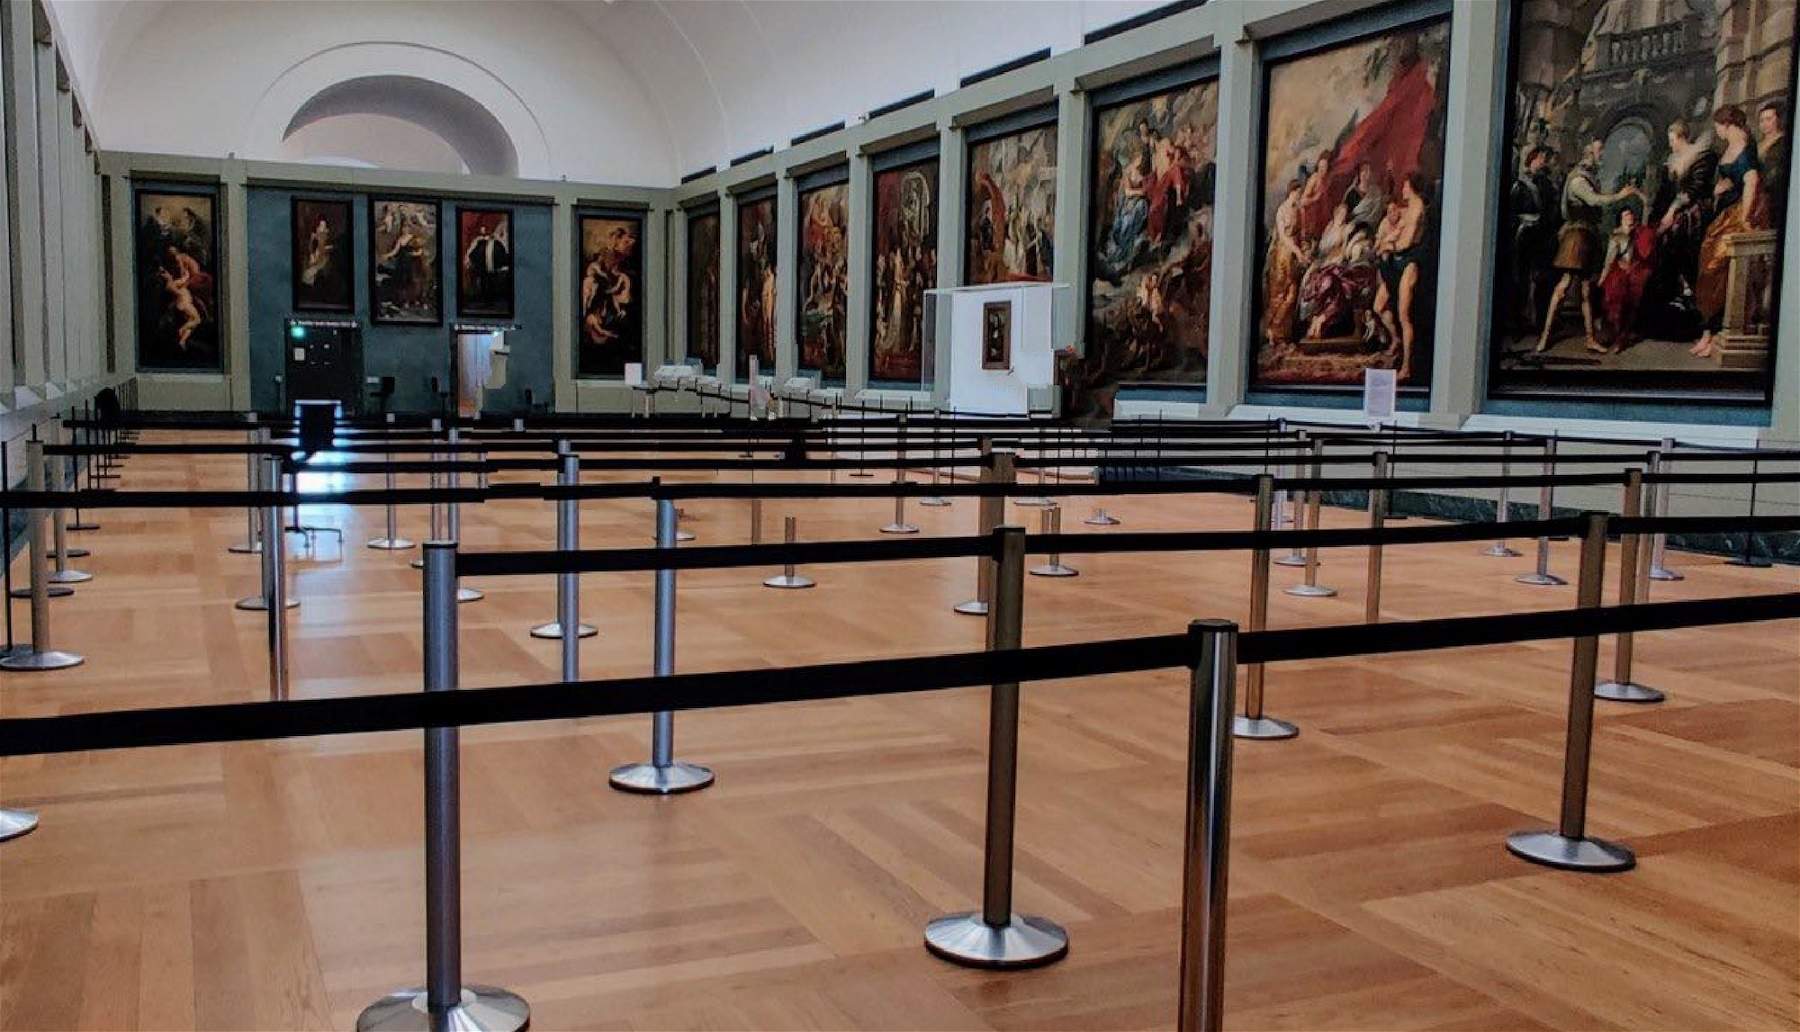 Louvre come Disneyland: le code per vedere la Gioconda si fanno in un percorso transennato. E la sicurezza? 